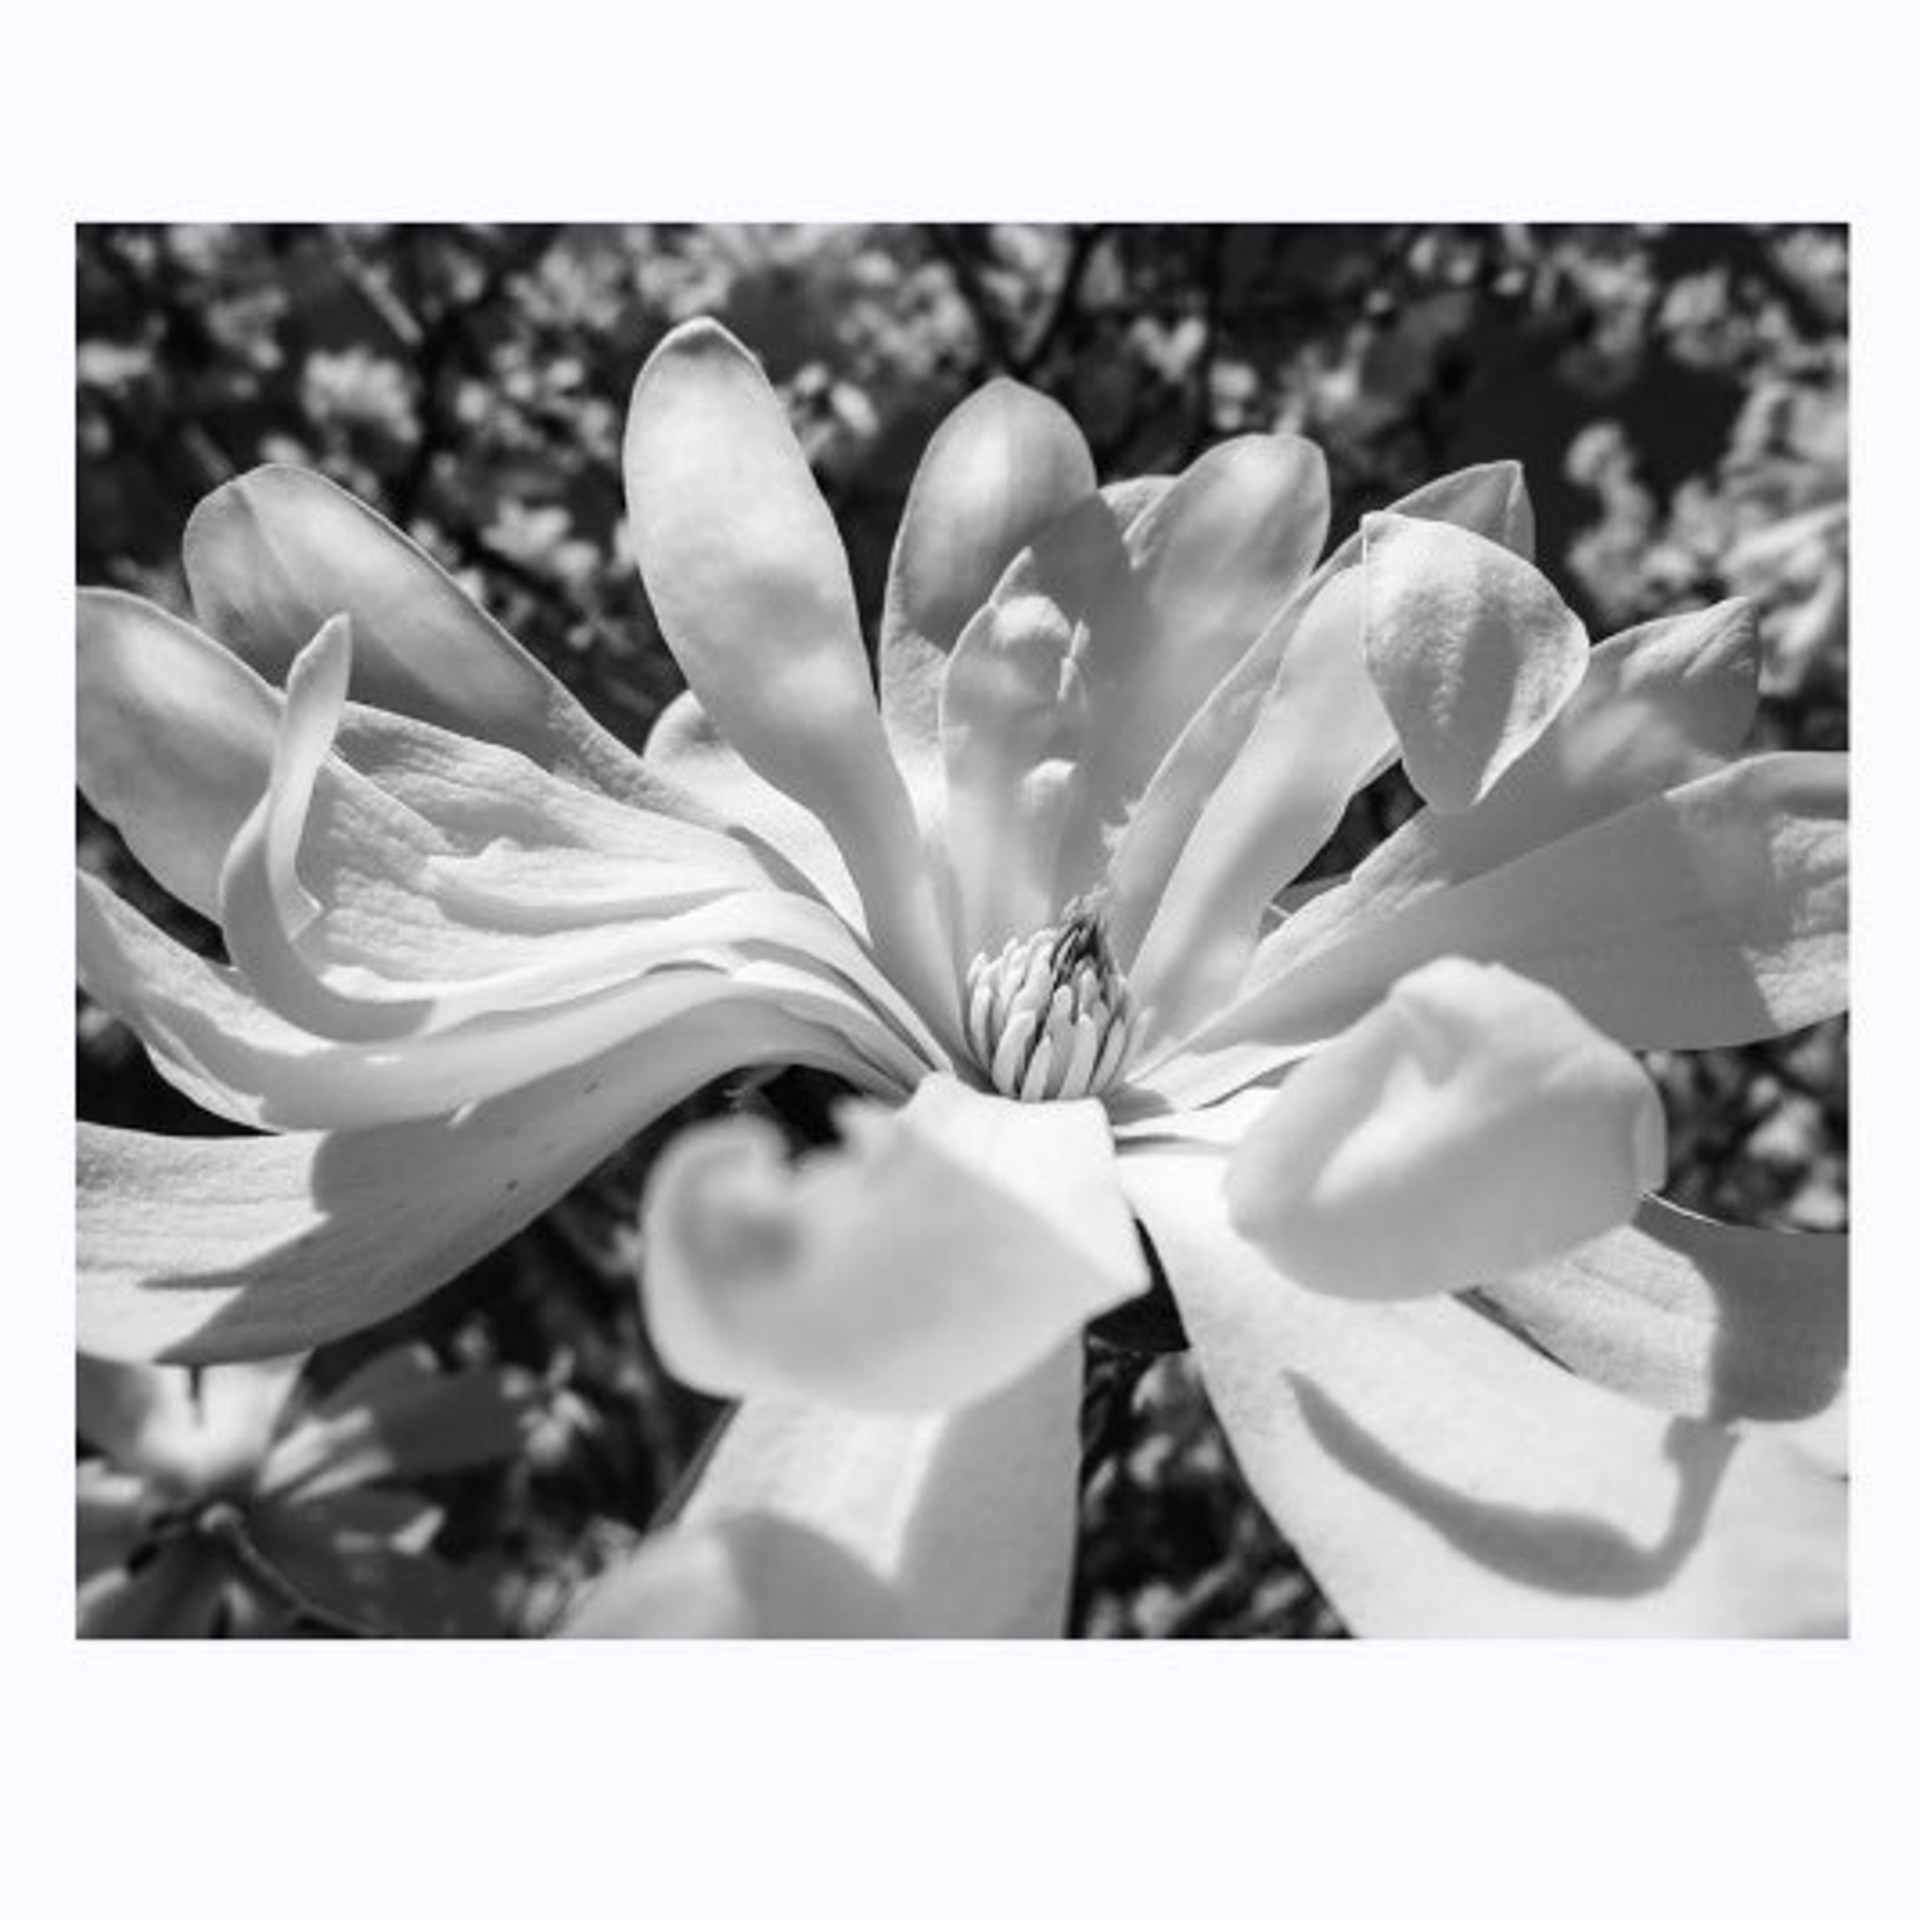 Blossomed (Japanese Magnolia) by Karen Bullock